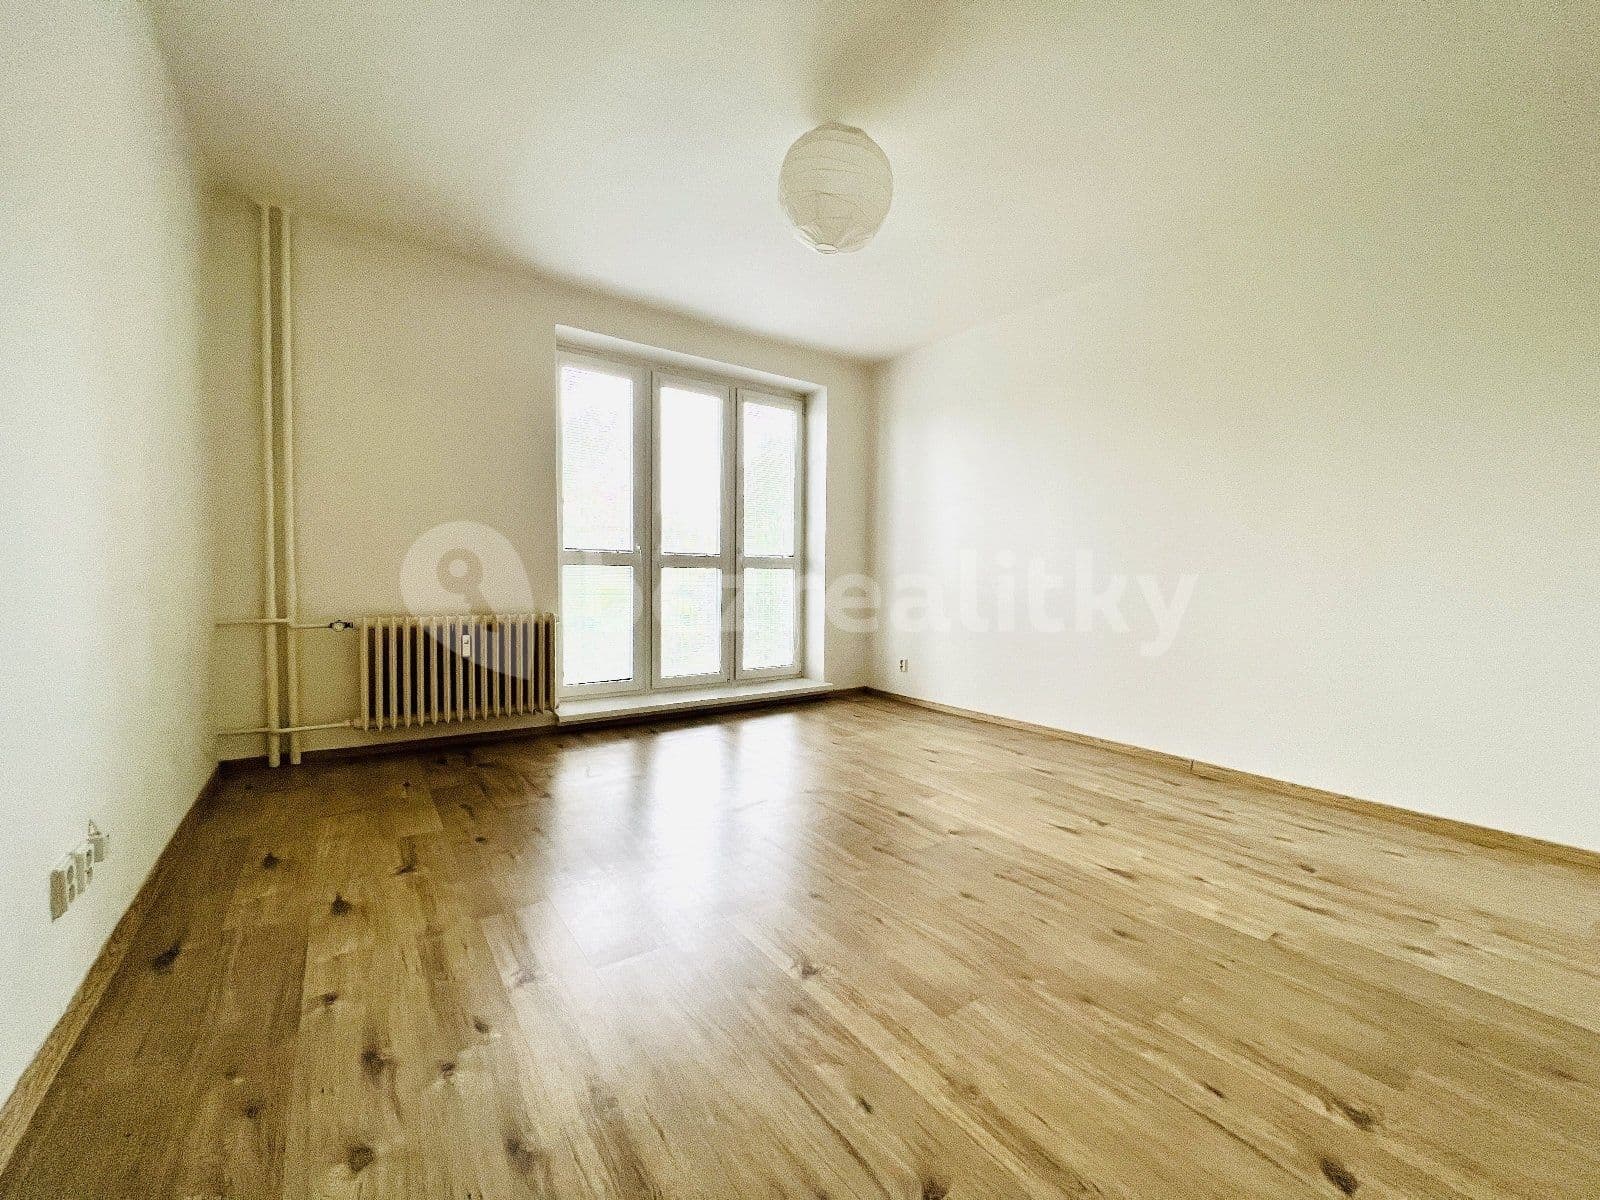 1 bedroom flat to rent, 38 m², Opavská, Ostrava, Moravskoslezský Region